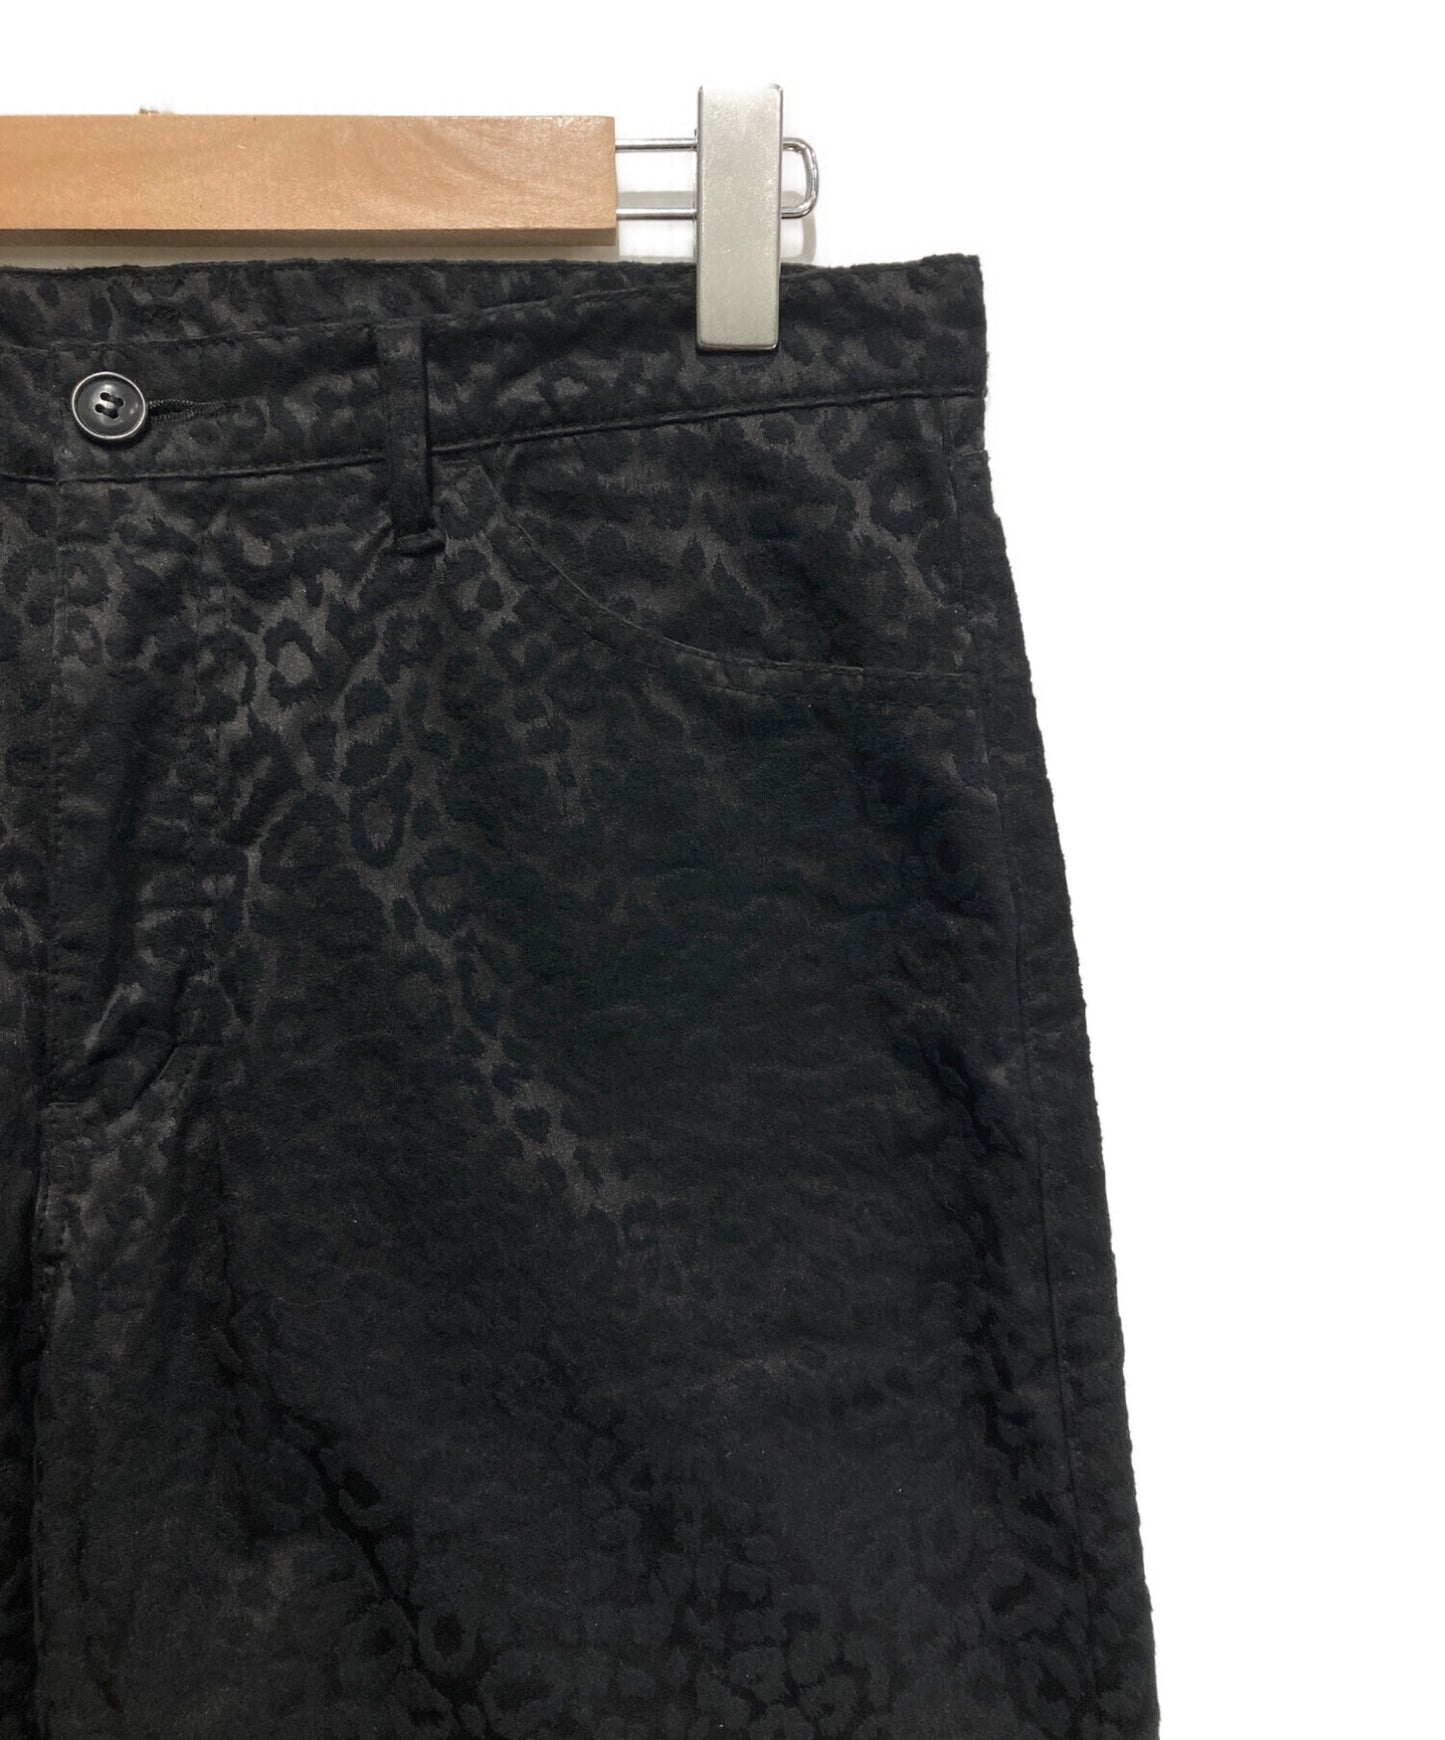 黑色COMME DES GARCONS豹褲/休閒/斜紋褲/褲子，帶有整個圖案1N-P010